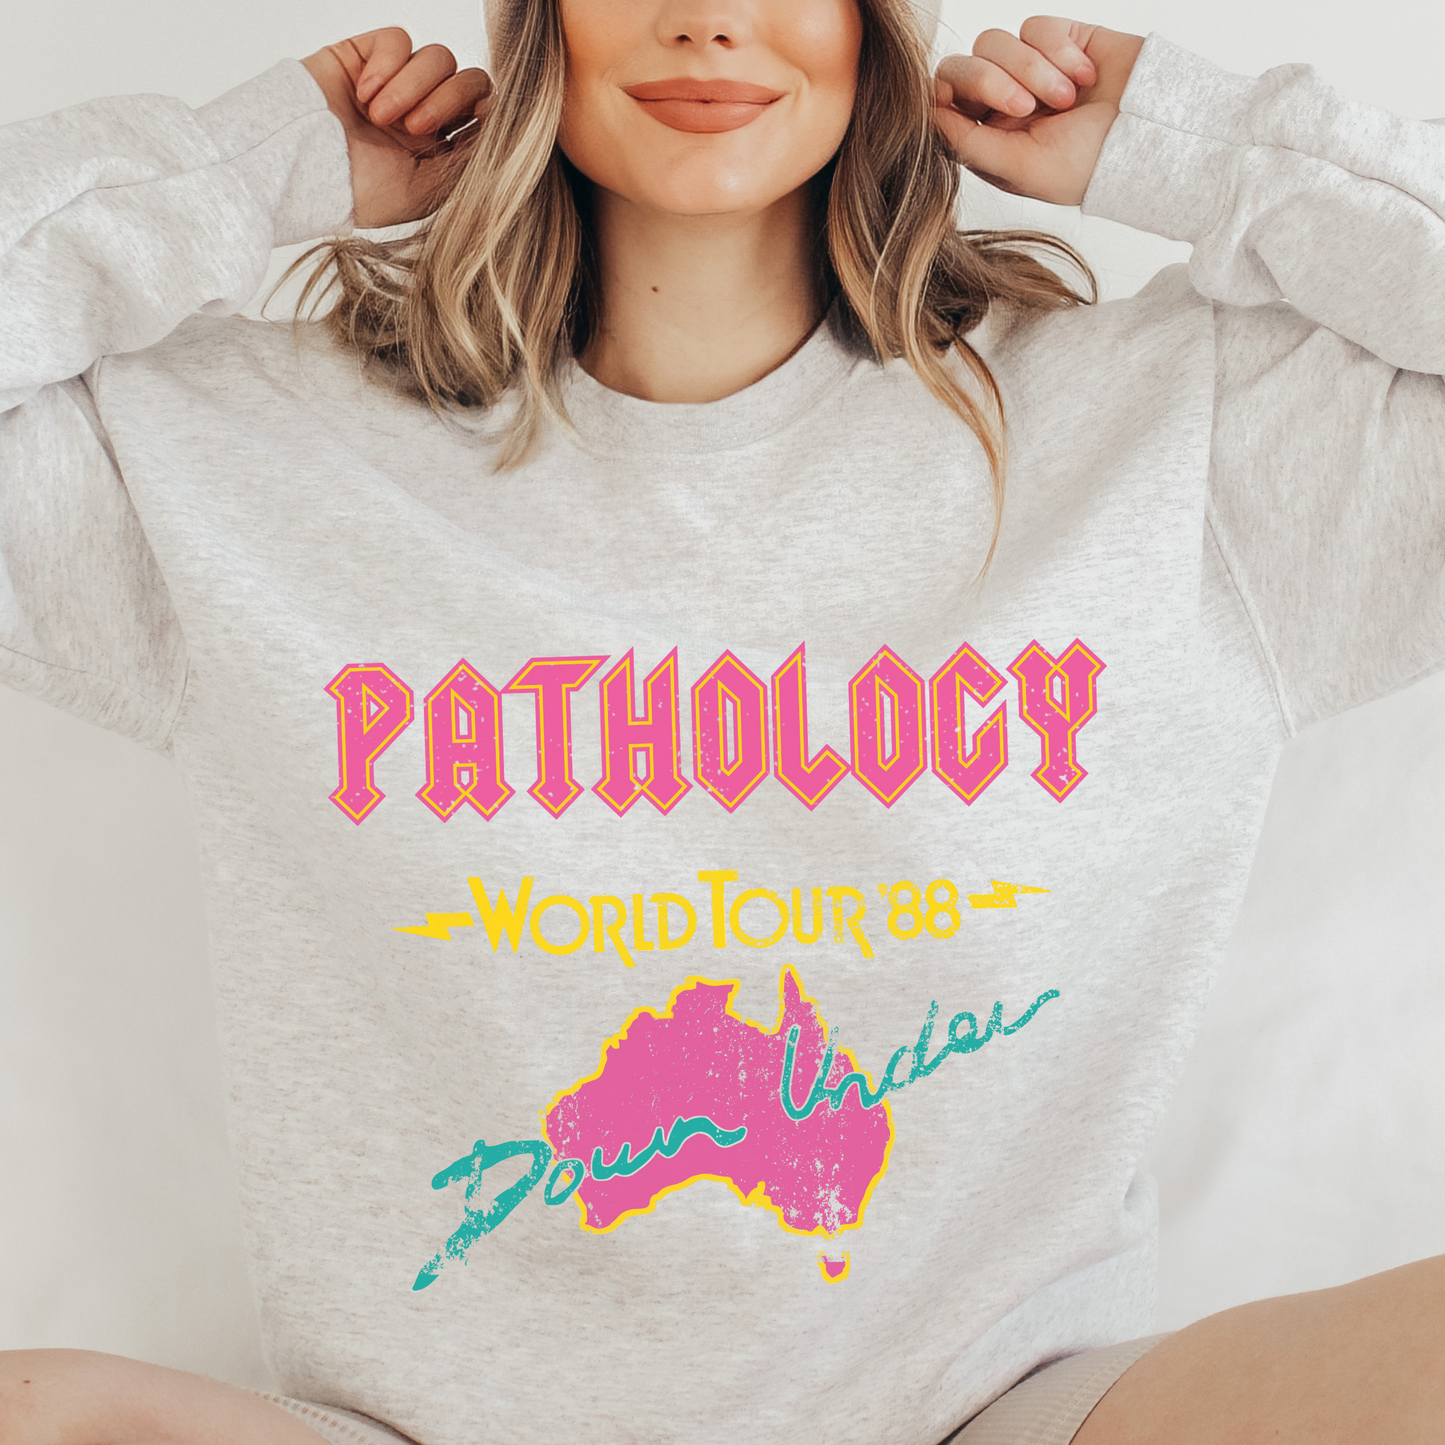 Pathology World Tour Crewneck Sweatshirt